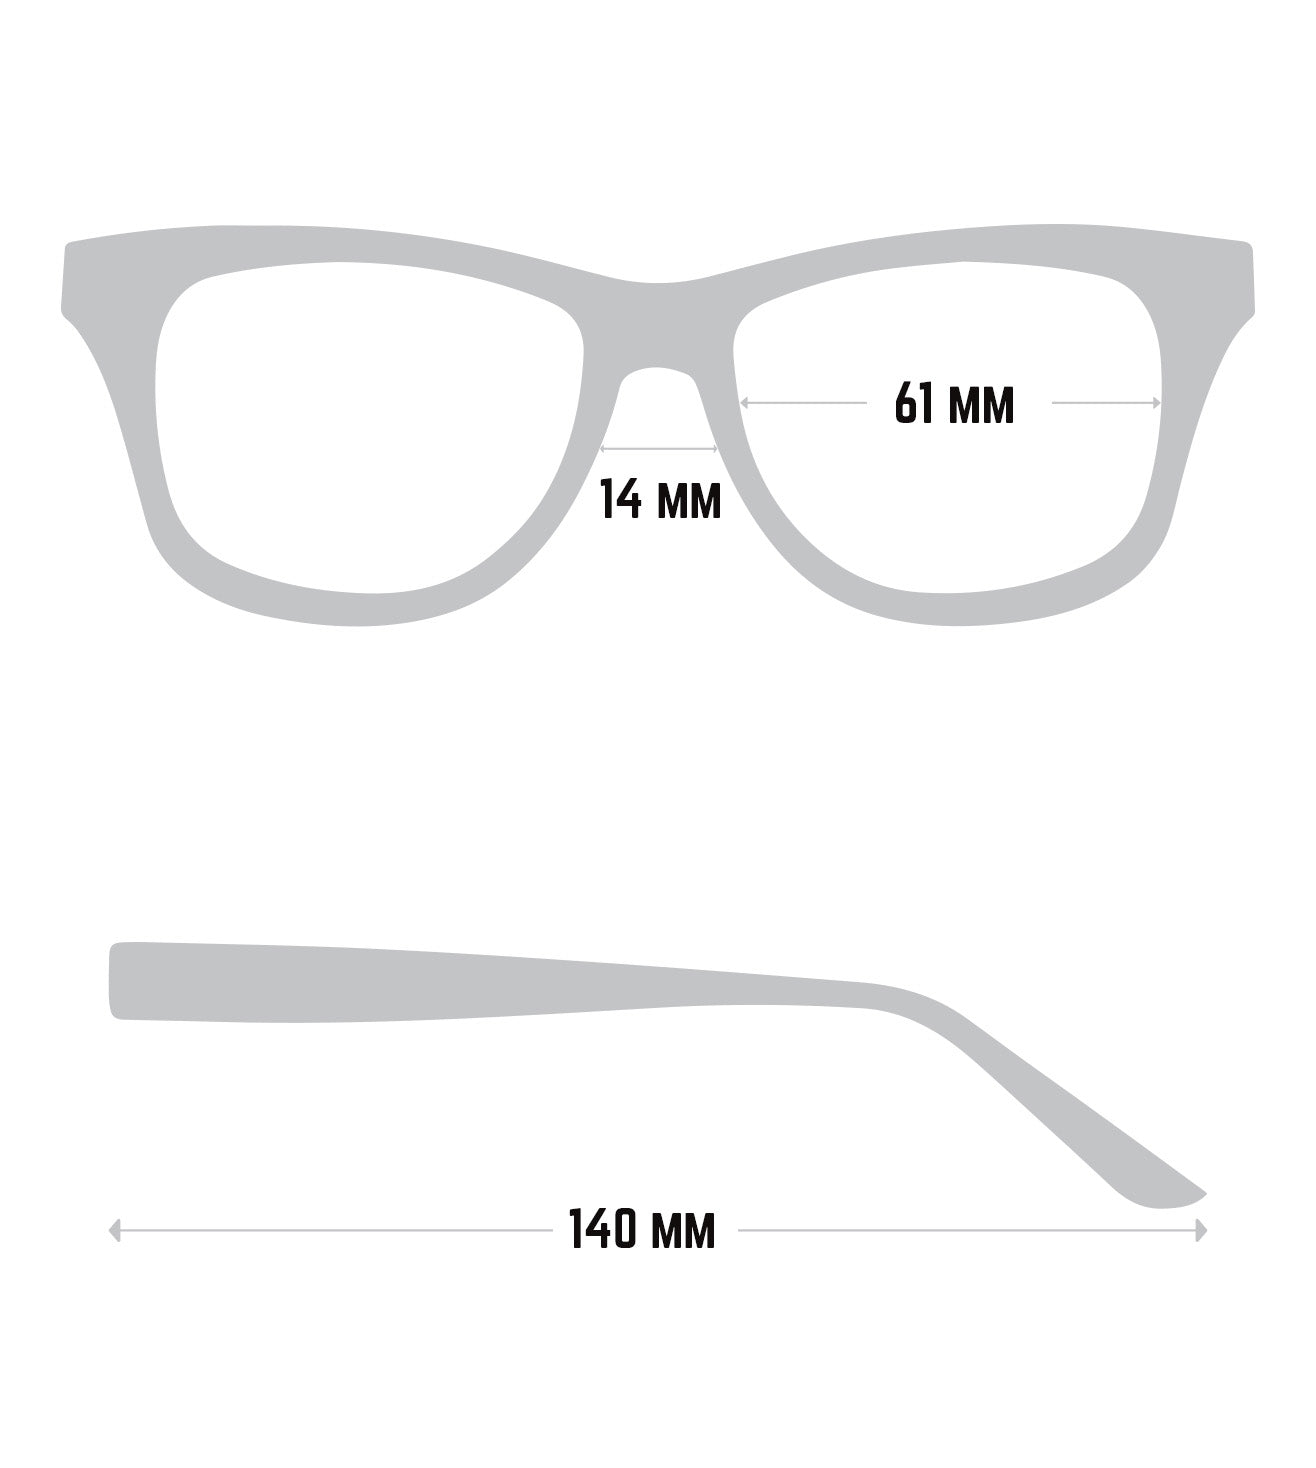 Porsche Design Men's Dark blue-mirrored Square Sunglasses